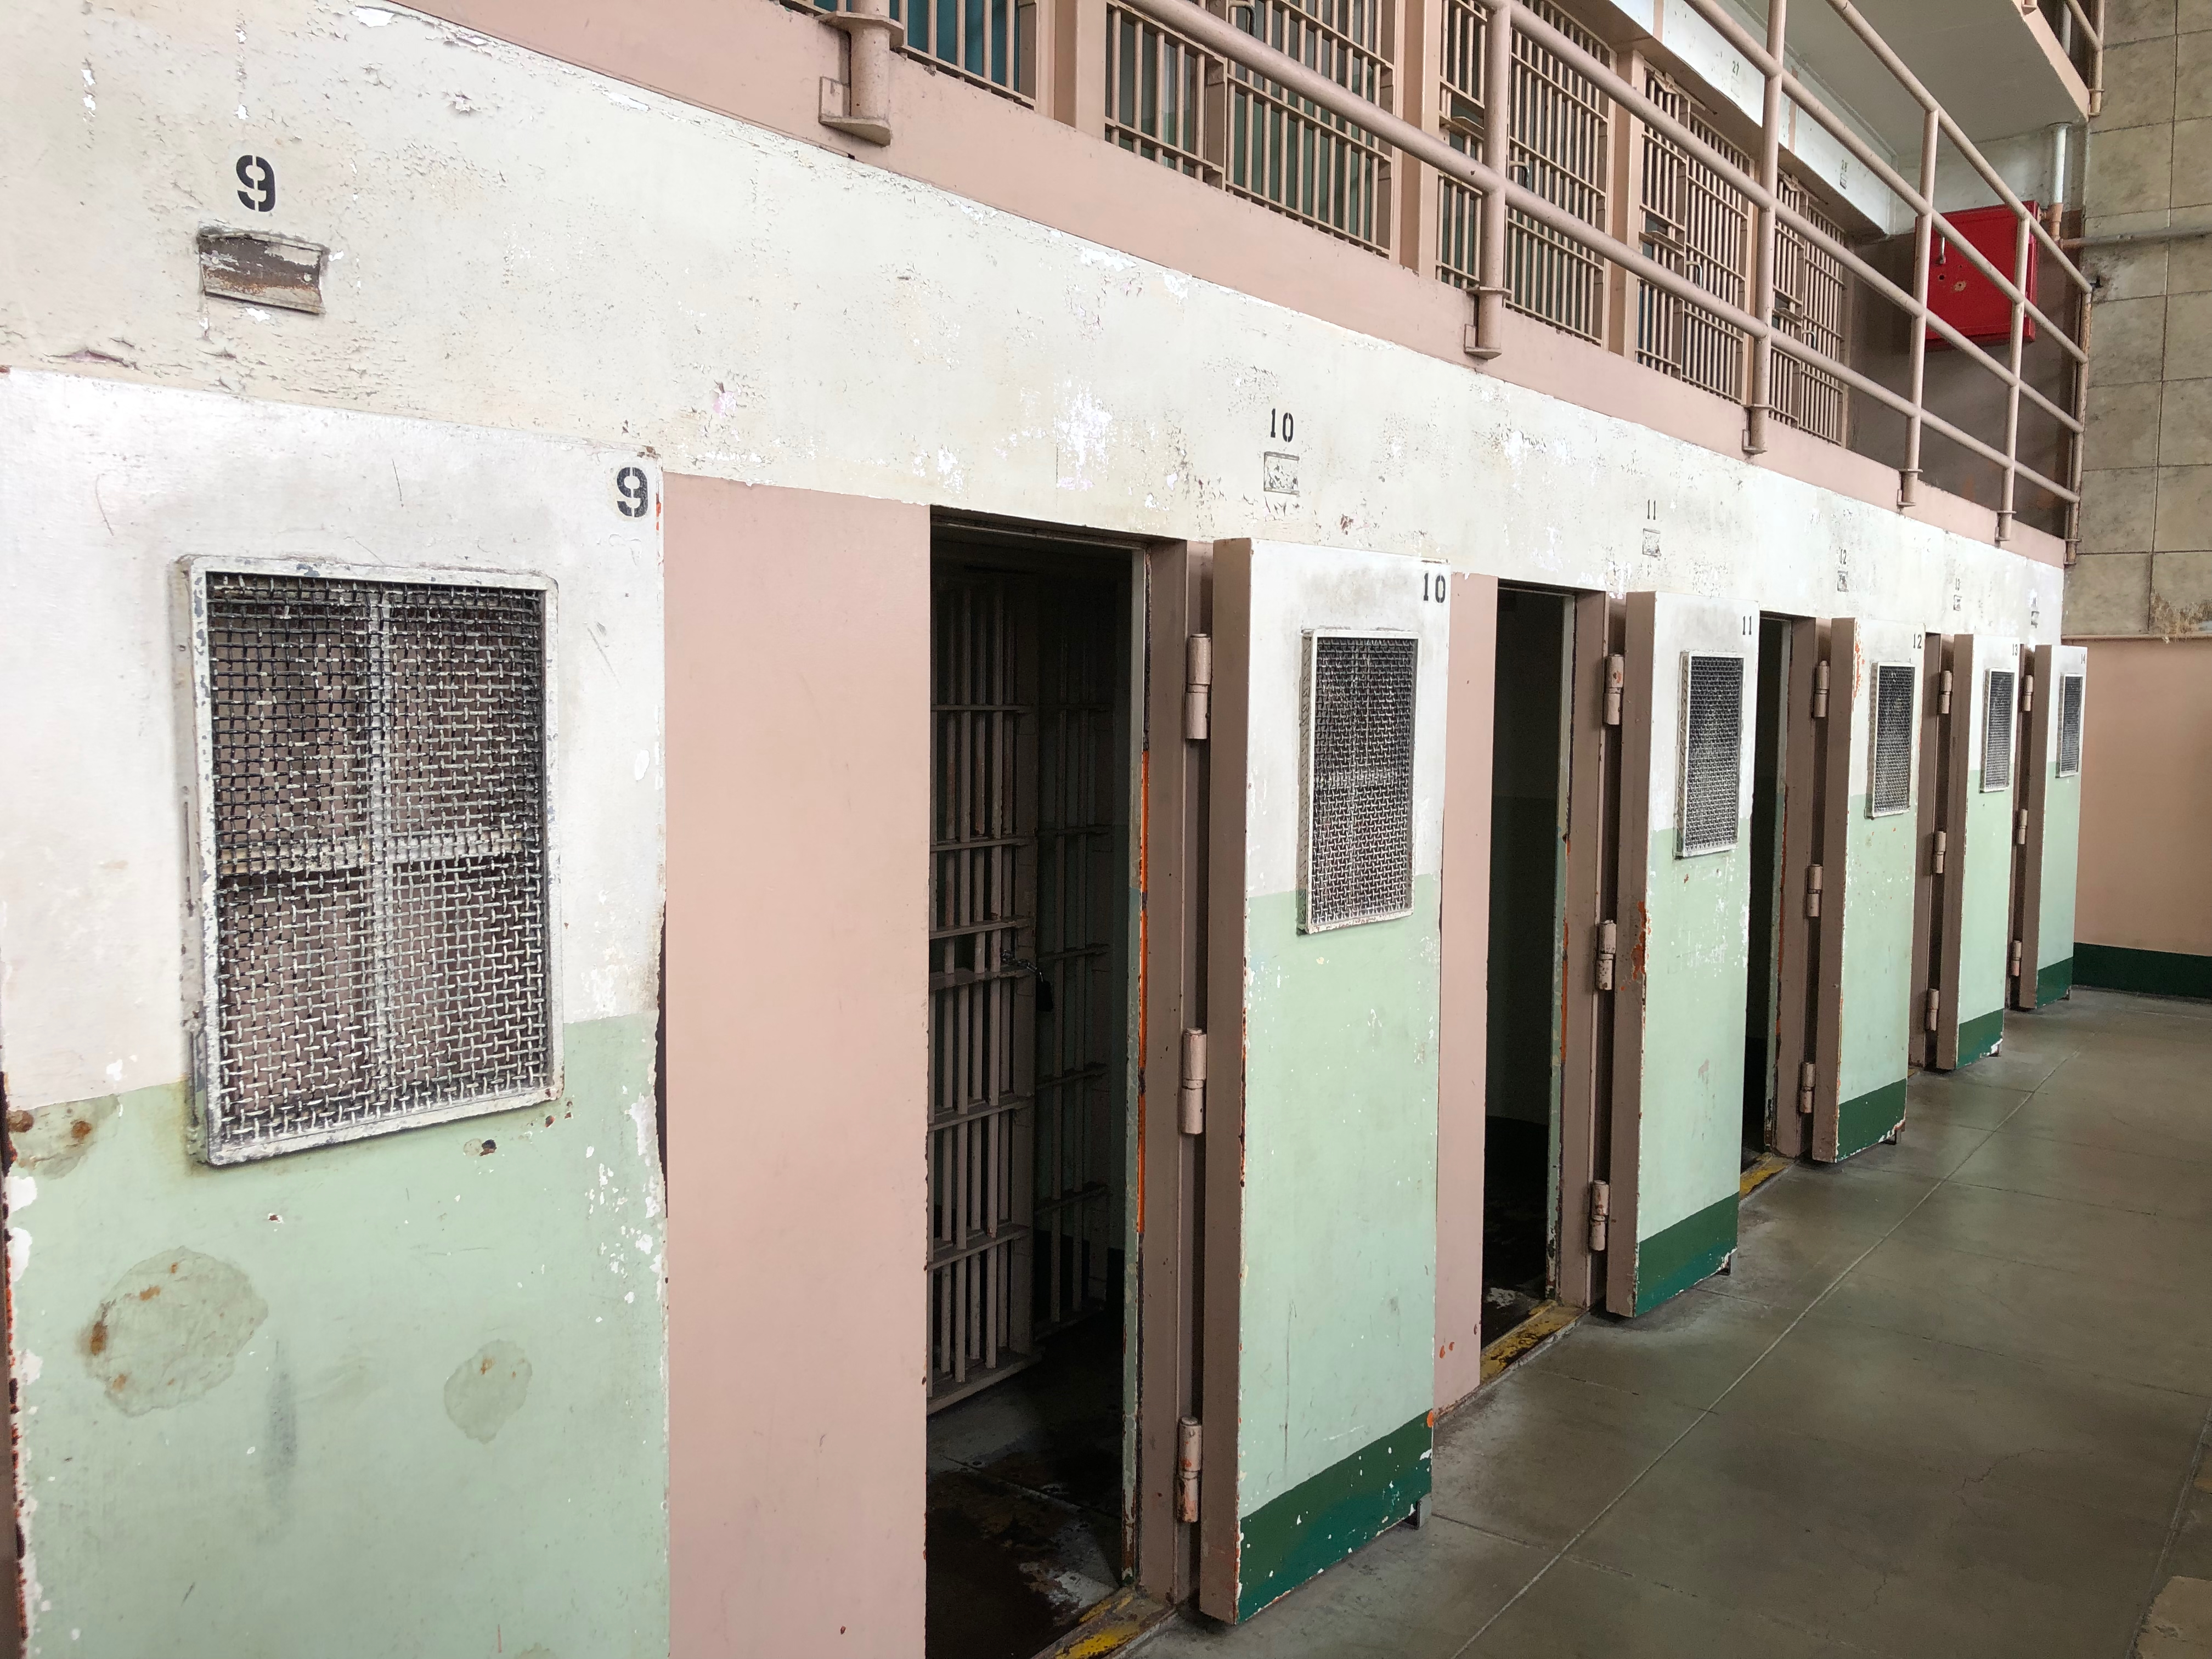 Cells at Alcatraz